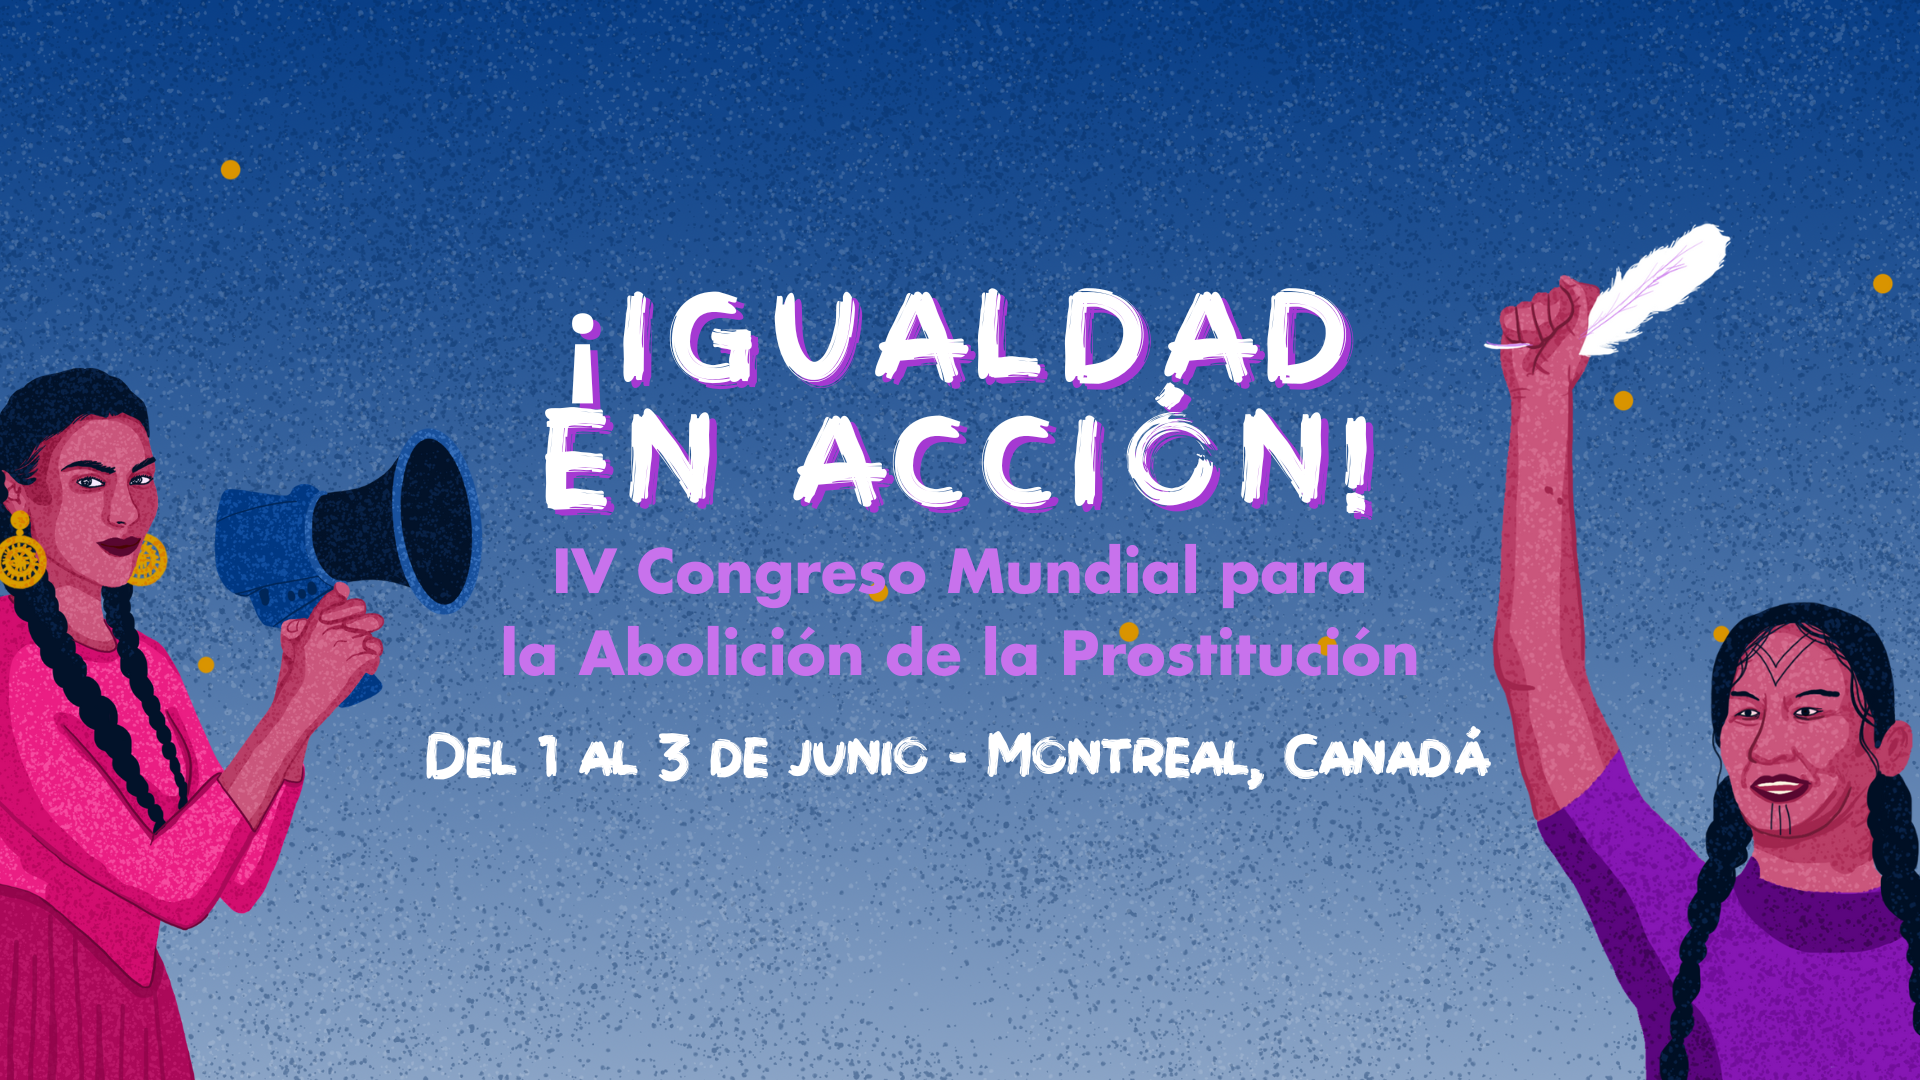 El Congreso Mundial por la Abolición de la Prostitución celebra su 4ª edición